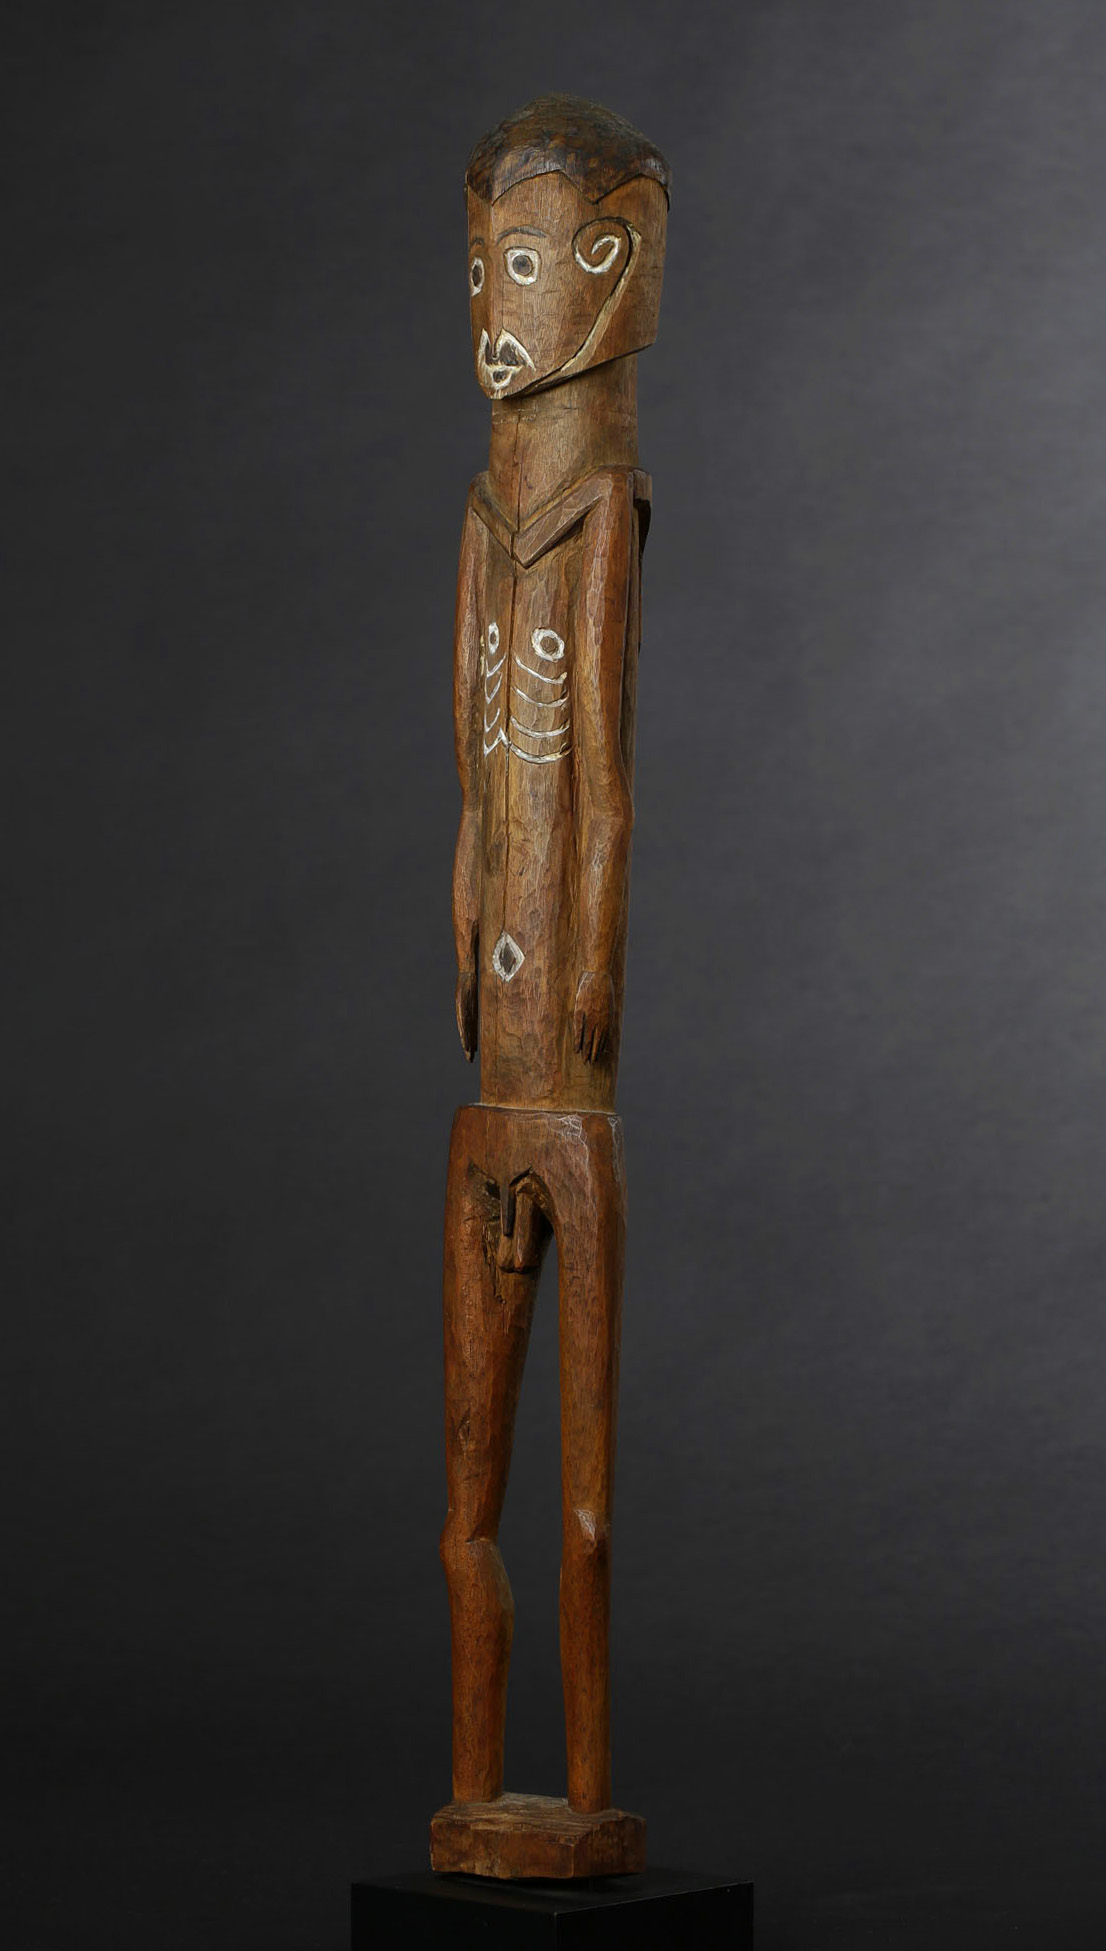 A Fine Old New Guinea Ancestor Figure Humboldt Bay Area West Papua Irian Jaya Indonesia